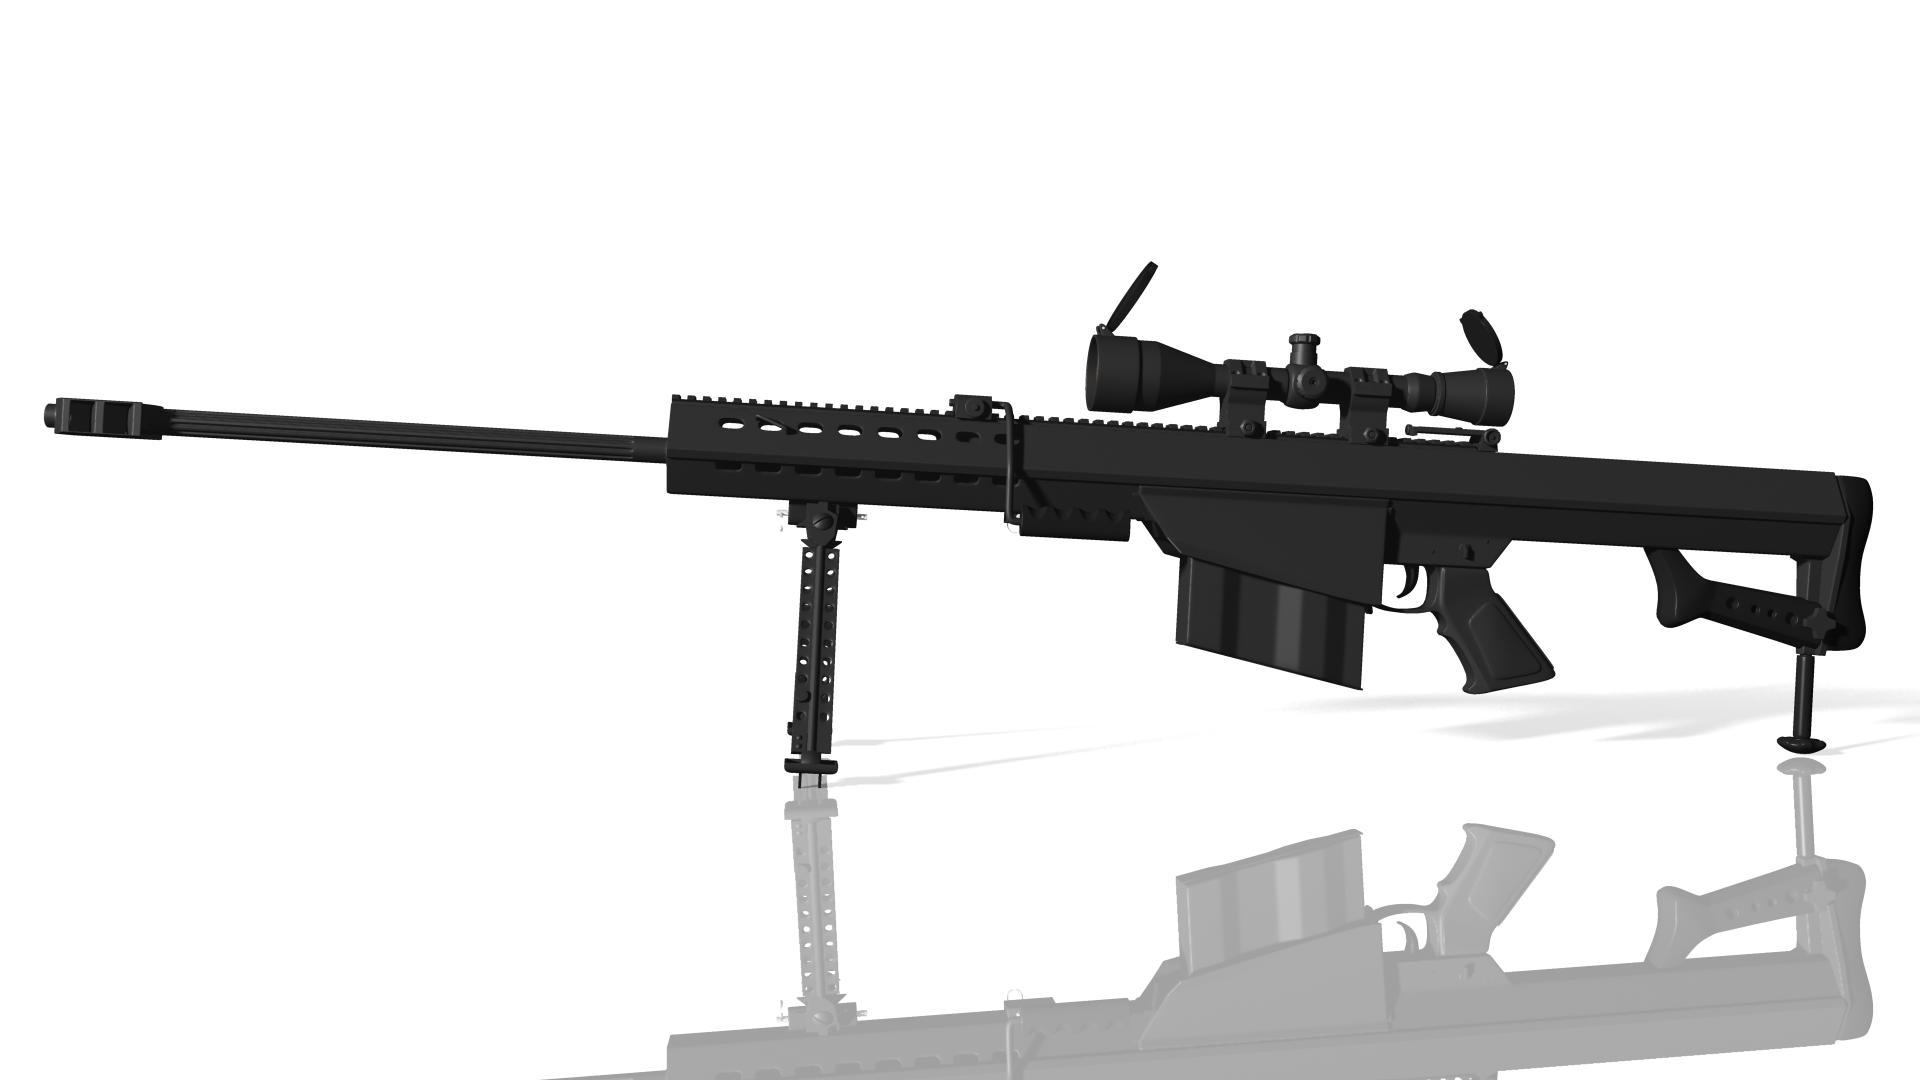 巴雷特M82A1狙击枪 军事天地壁纸巴雷特M82A1狙击枪壁纸图片_桌面壁纸图片_壁纸下载-元气壁纸